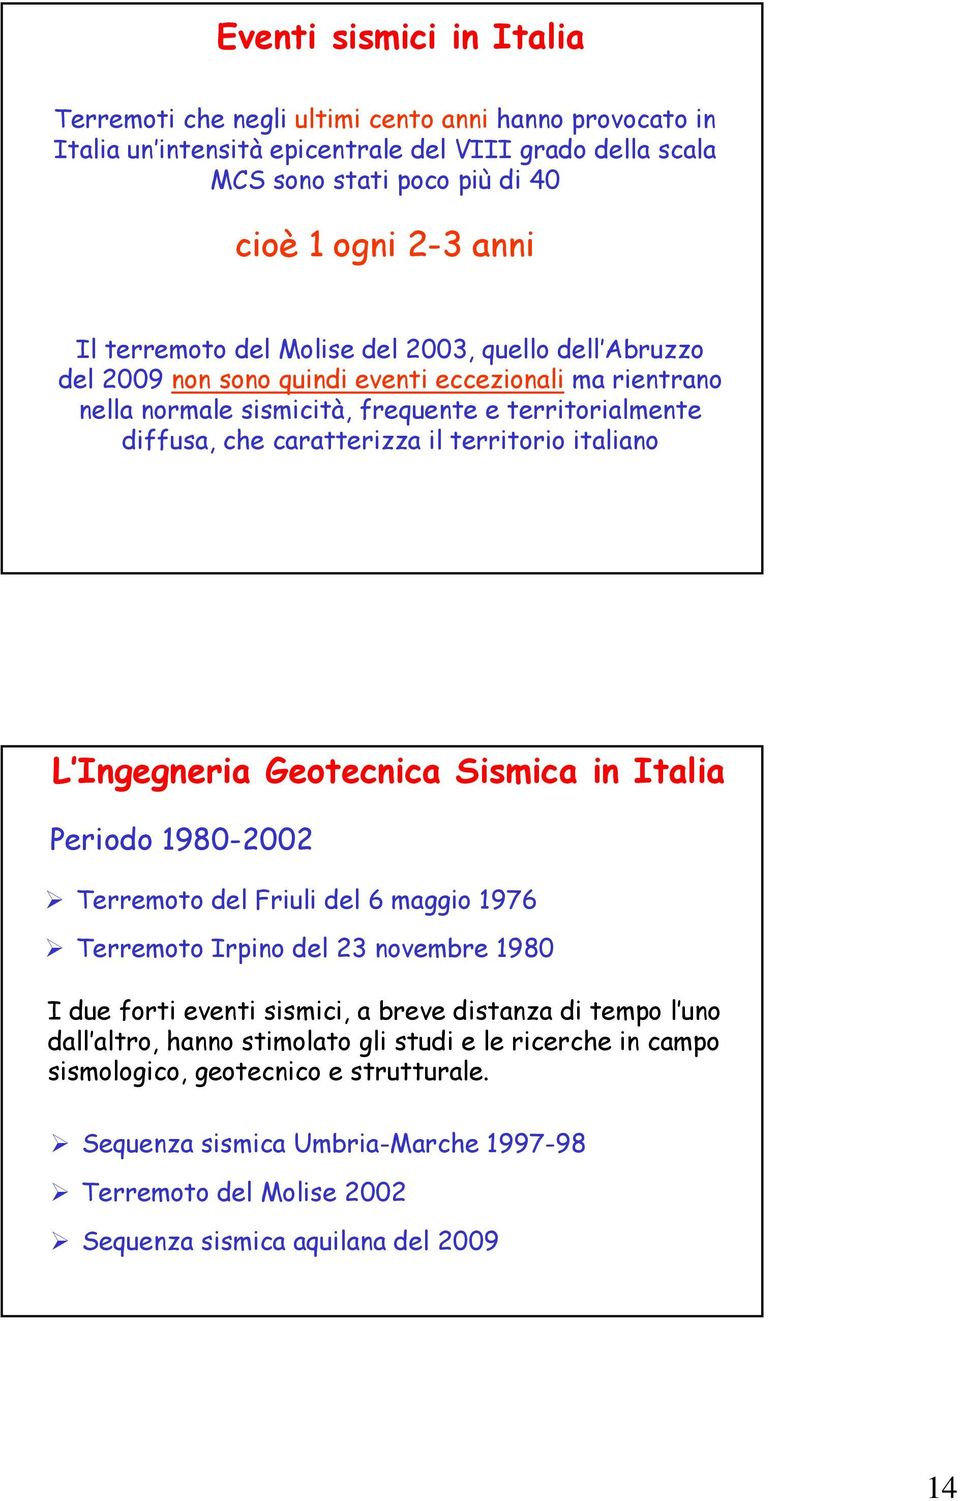 territorio italiano L Ingegneria Geotecnica Sismica in Italia Periodo 1980-2002 Terremoto del Friuli del 6 maggio 1976 Terremoto Irpino del 23 novembre 1980 I due forti eventi sismici, a breve